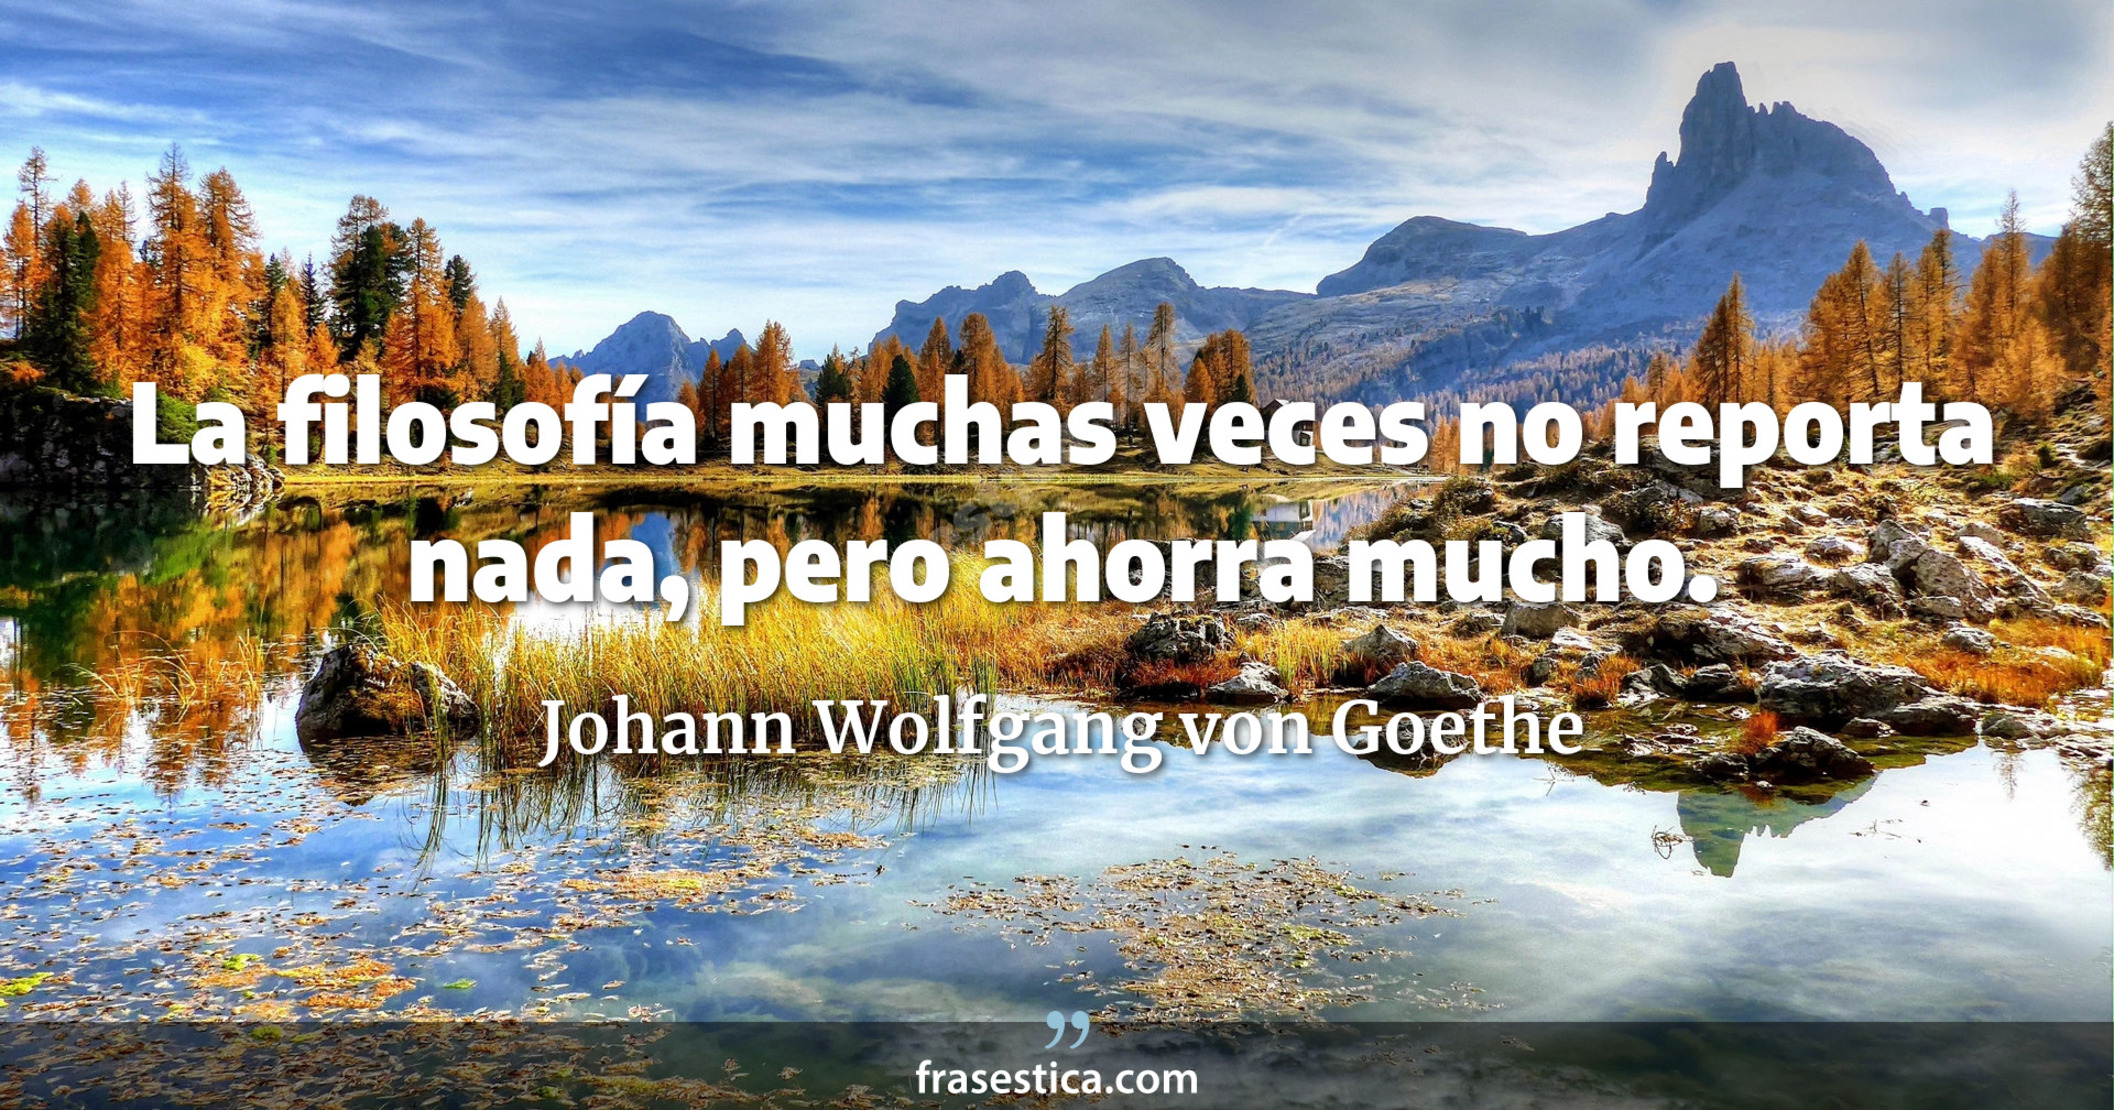 La filosofía muchas veces no reporta nada, pero ahorra mucho. - Johann Wolfgang von Goethe